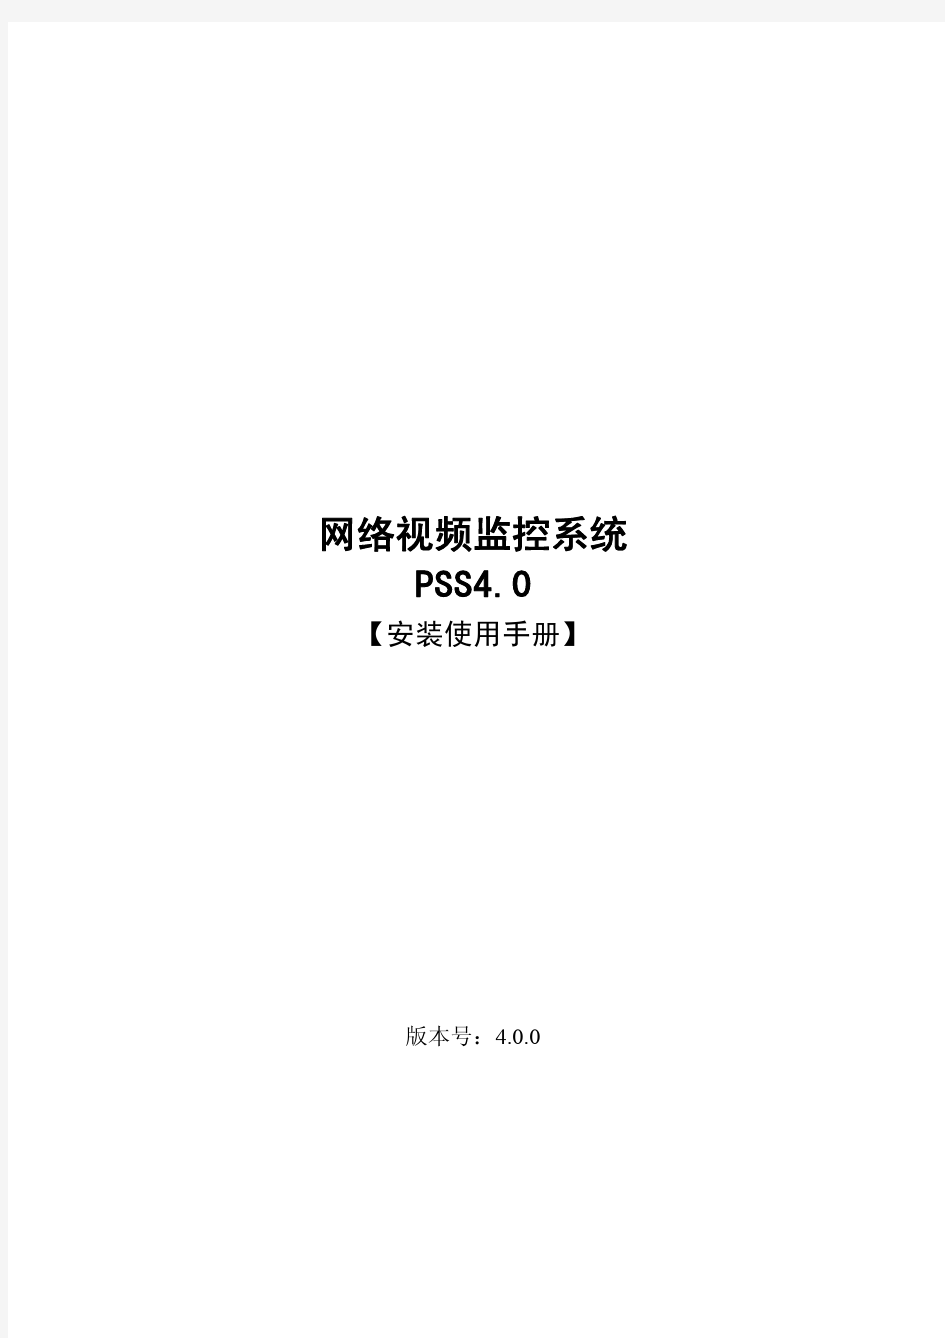 大华监控系统中文版使用手册